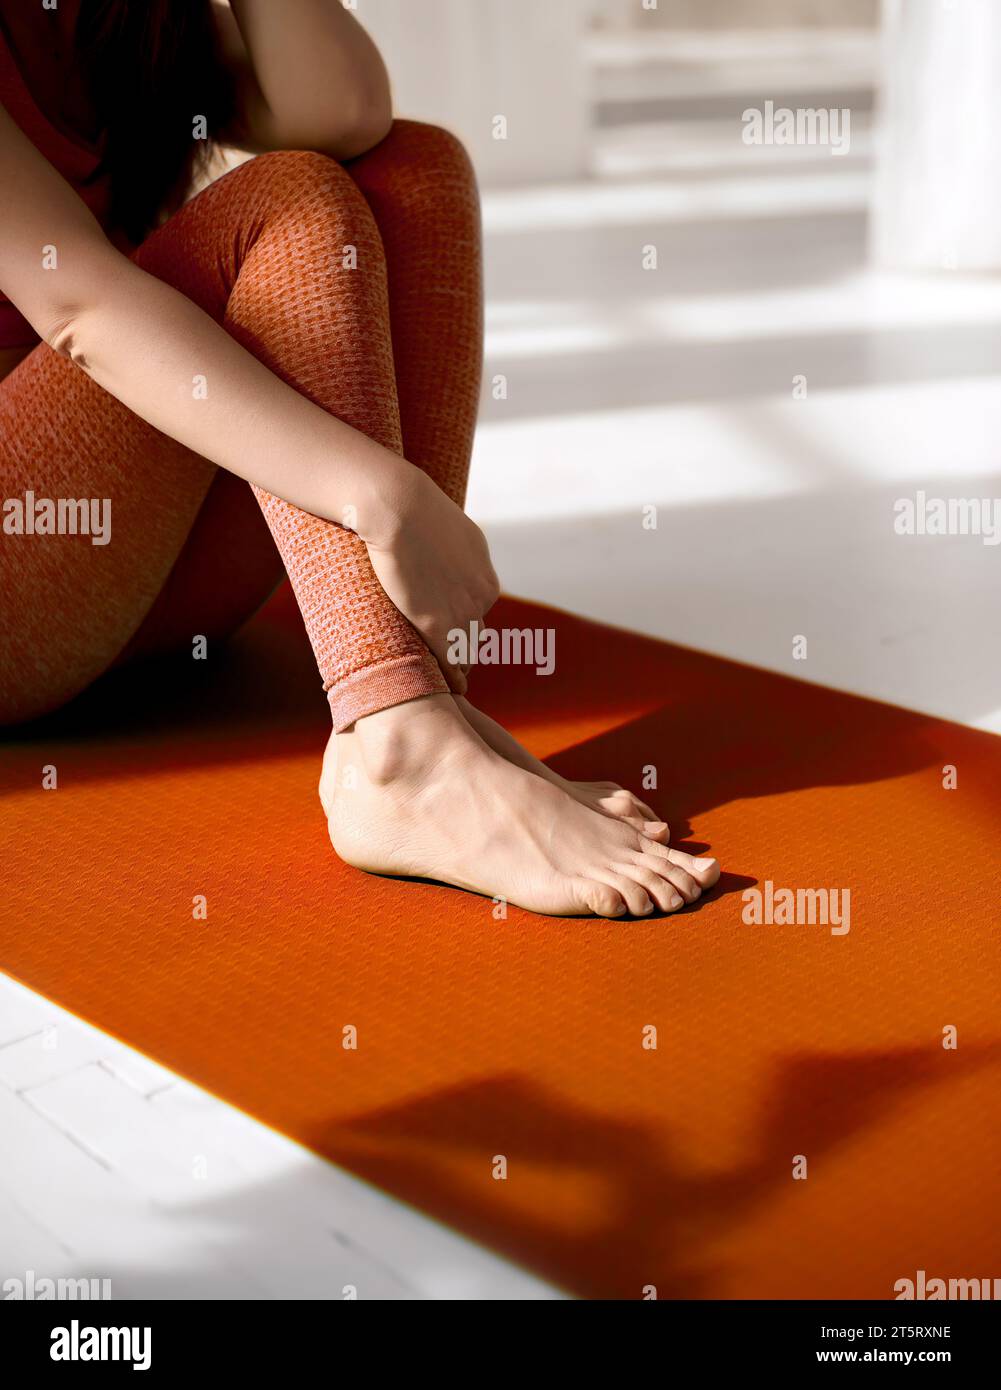 Nahaufnahme von weiblichen Füßen, die sich auf einer orangefarbenen Yogamatte entspannen. Physiotherapie, Reflexologie, Flexibilitätsförderung. Weniger Muskelkater, Inkreas Stockfoto